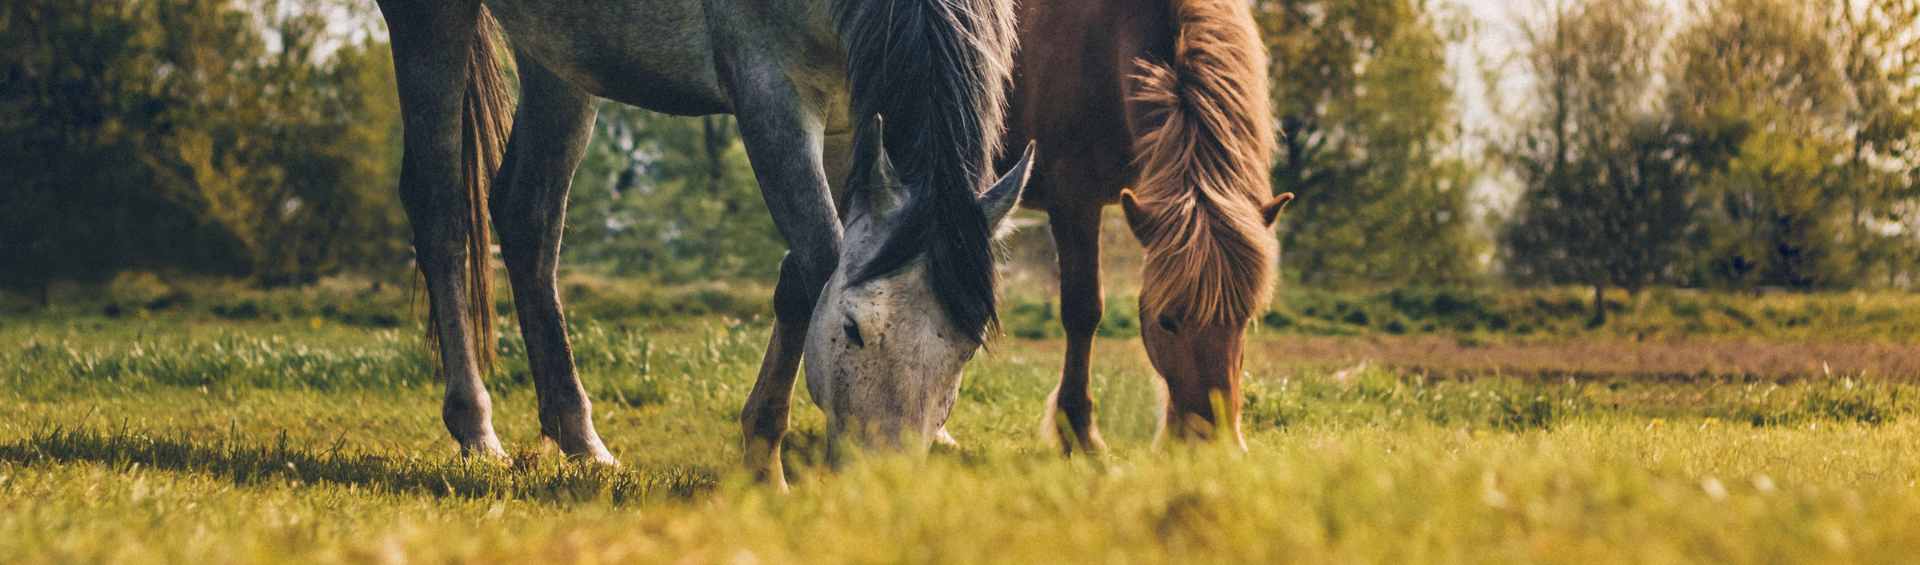 Zwei Pferde die grasen